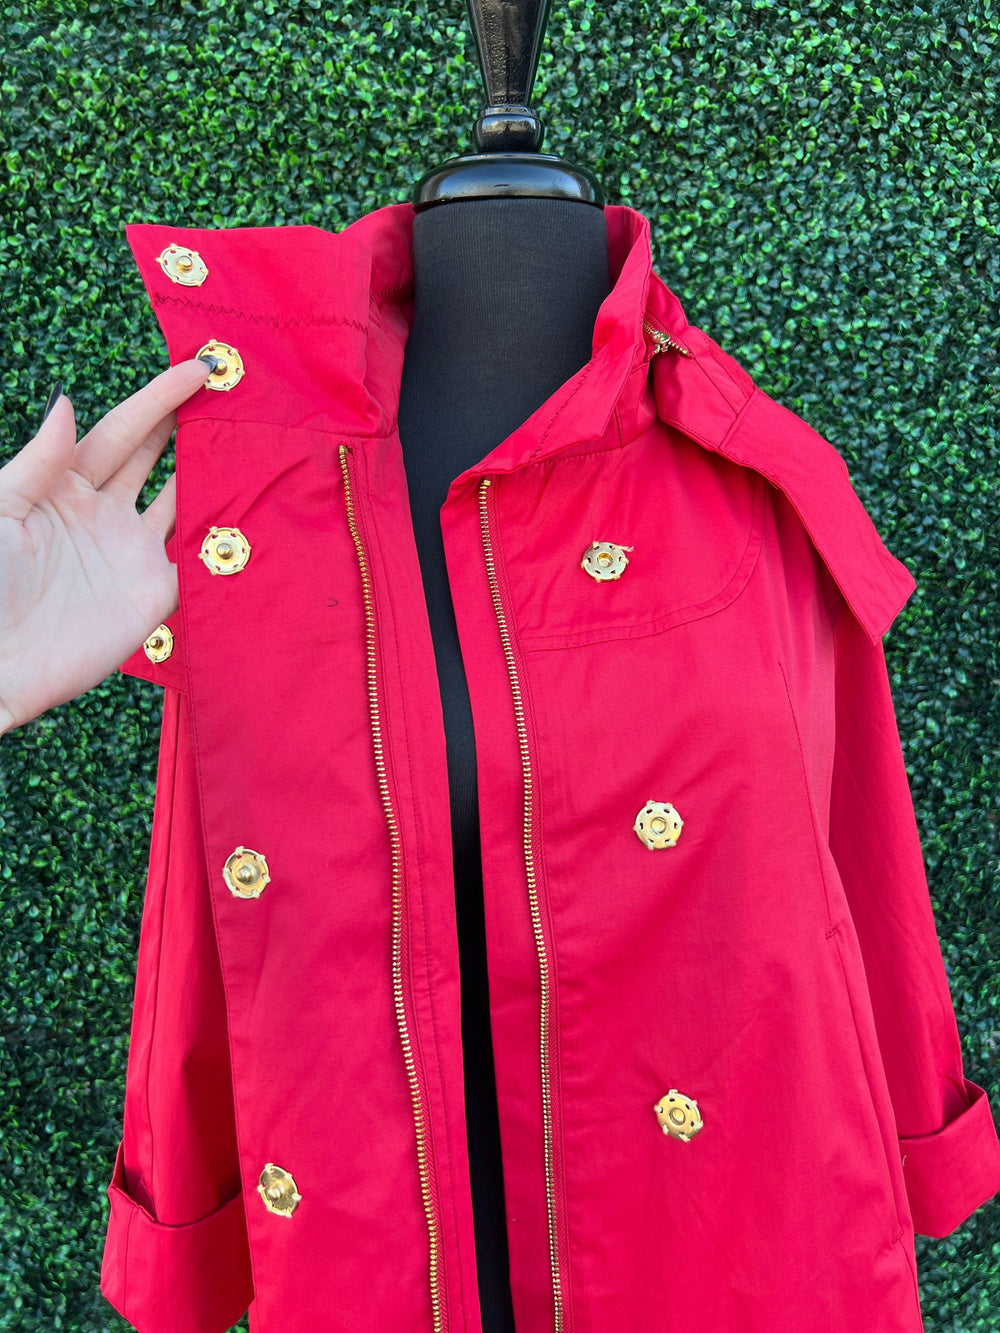 Water Resistant Jacket Zip off hood red tre chic